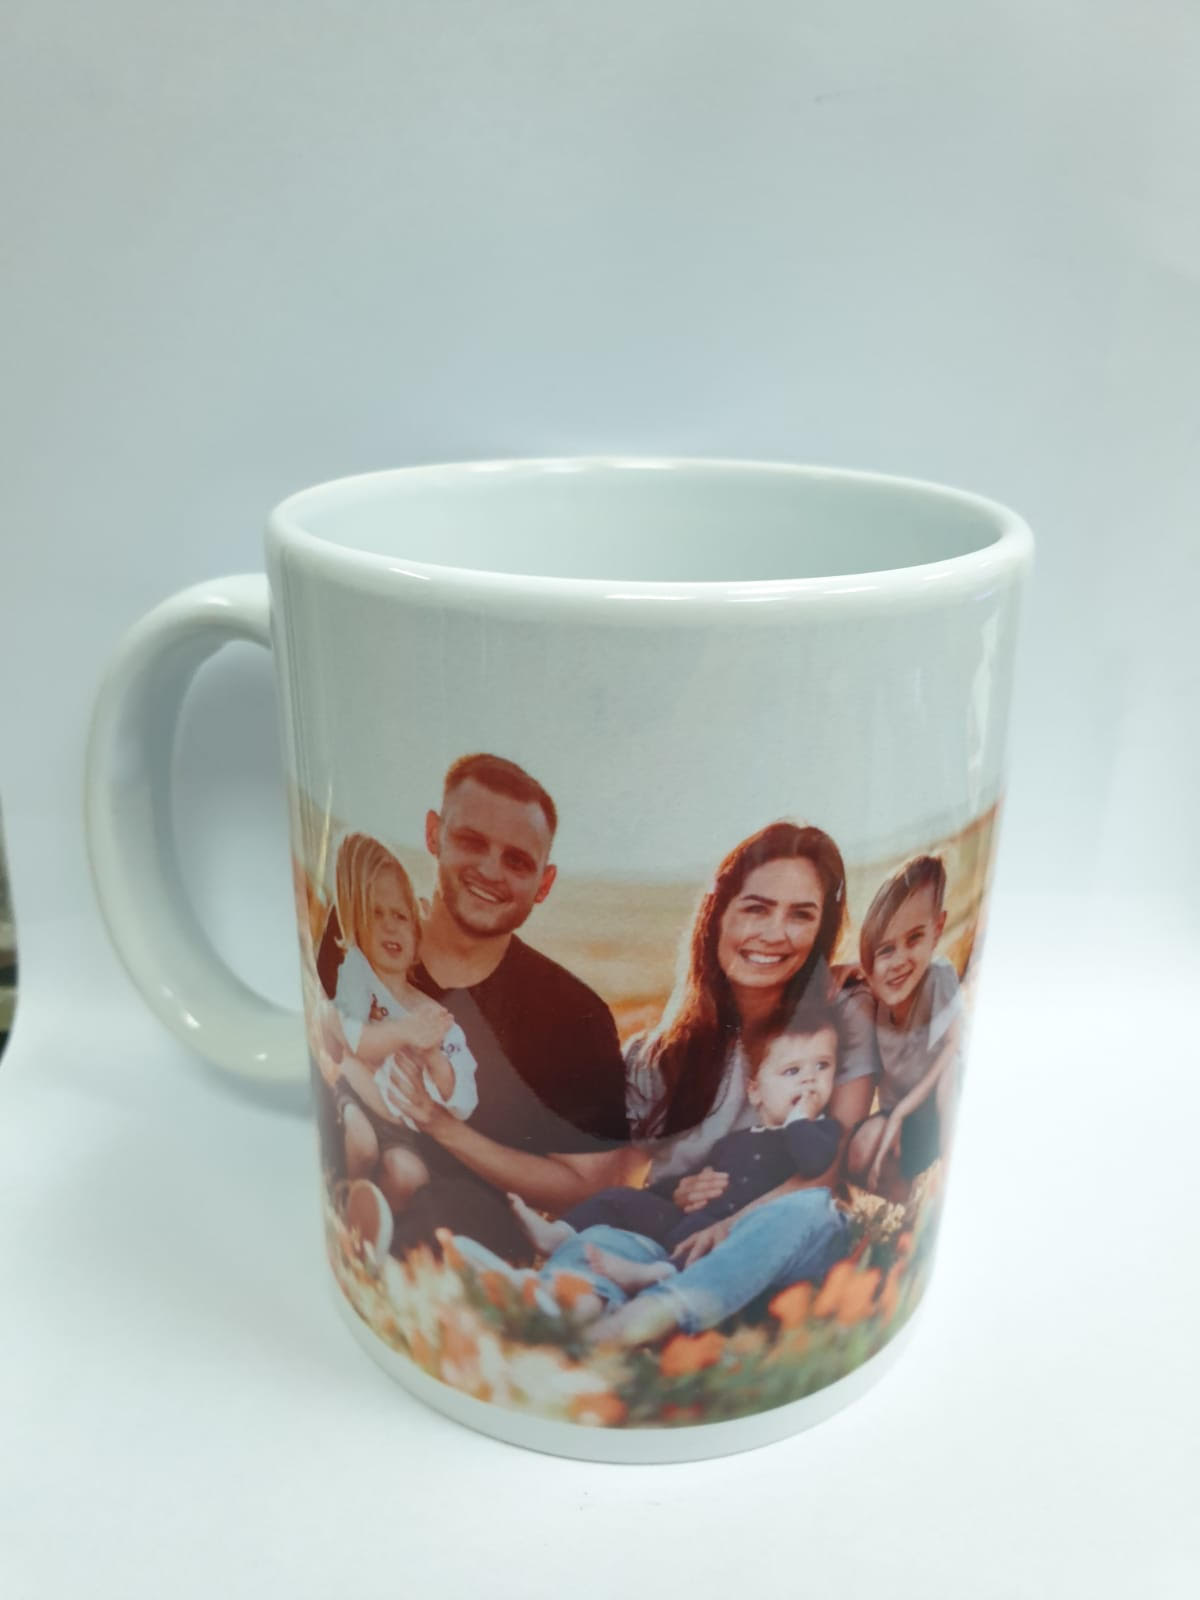 כוס עם תמונה משפחתית +כיתוב